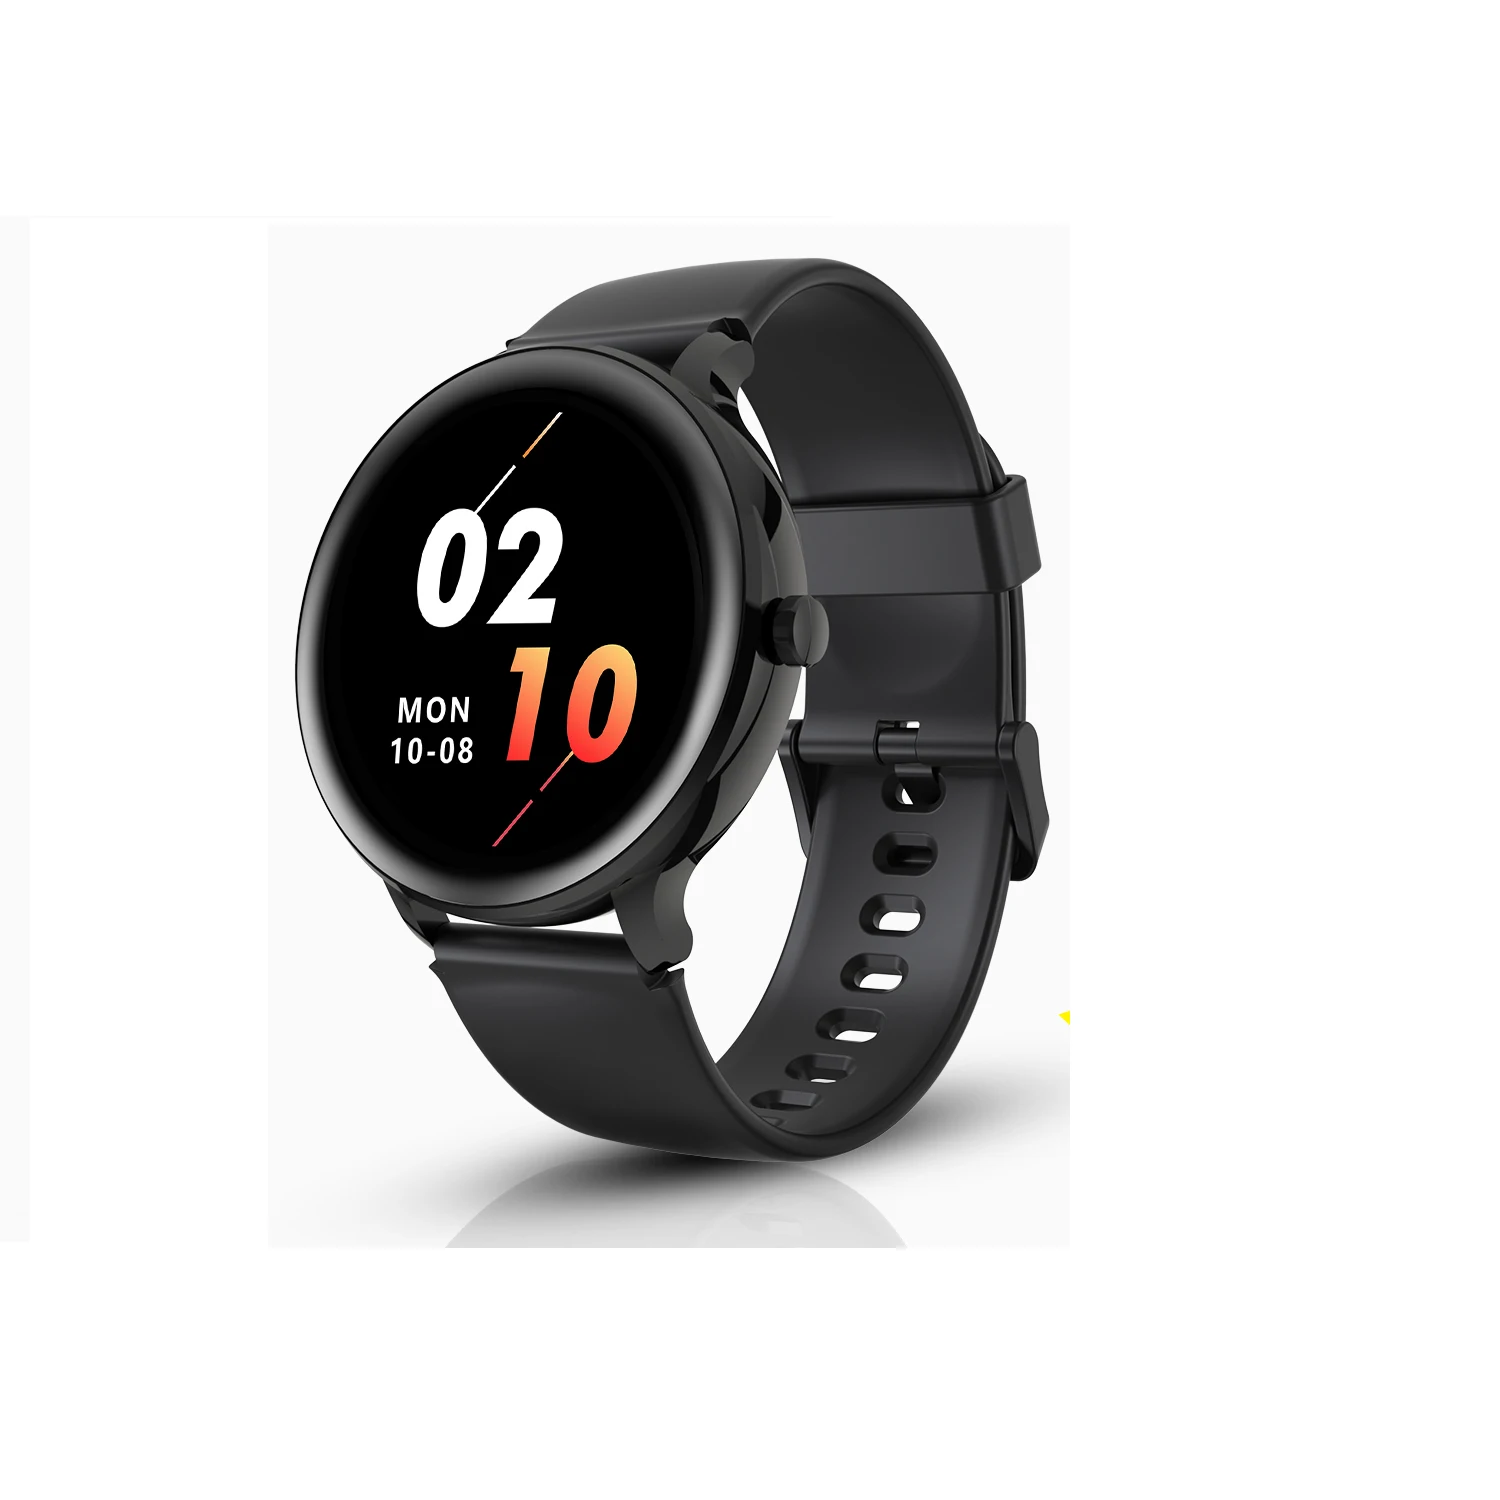 

Blackview nuovo SmartWatch X2 5ATM waterproof frequenza cardiaca orologio sportivo orologio monitoraggio del sonno Android IOS